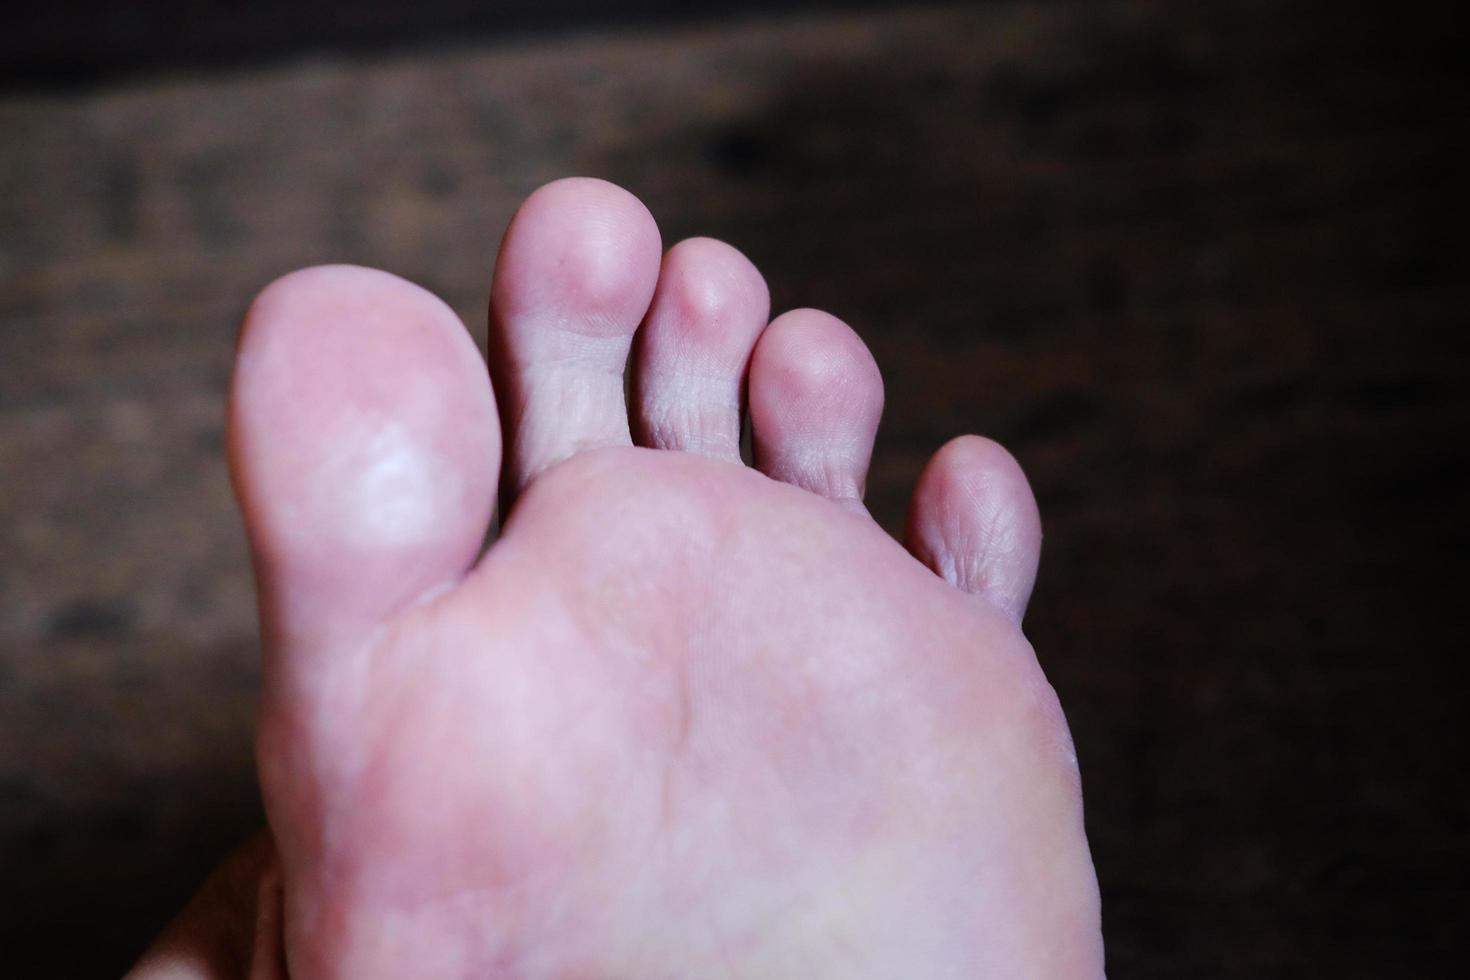 pieds féminins fermés avec des ongles français sur parquet, soins sains et concept médical photo